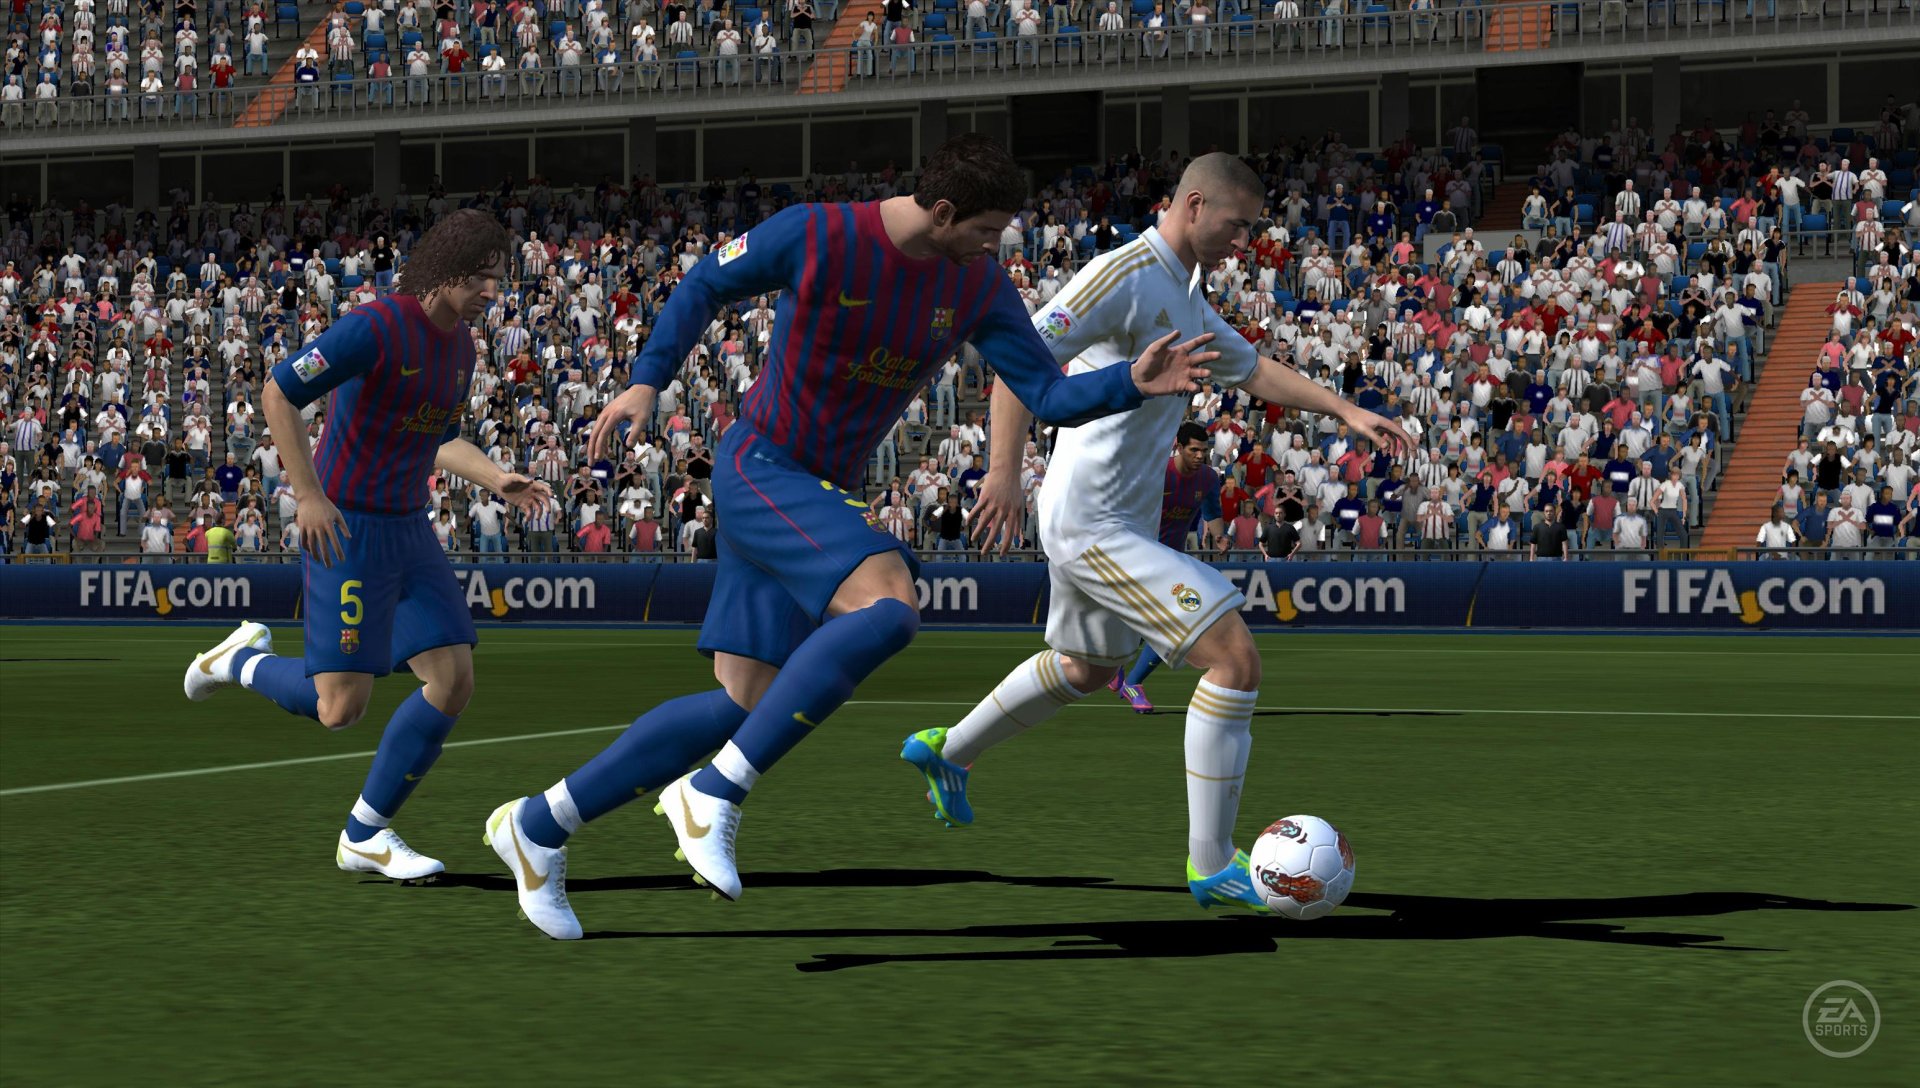 FIFA 2023, PS Vita Gameplay